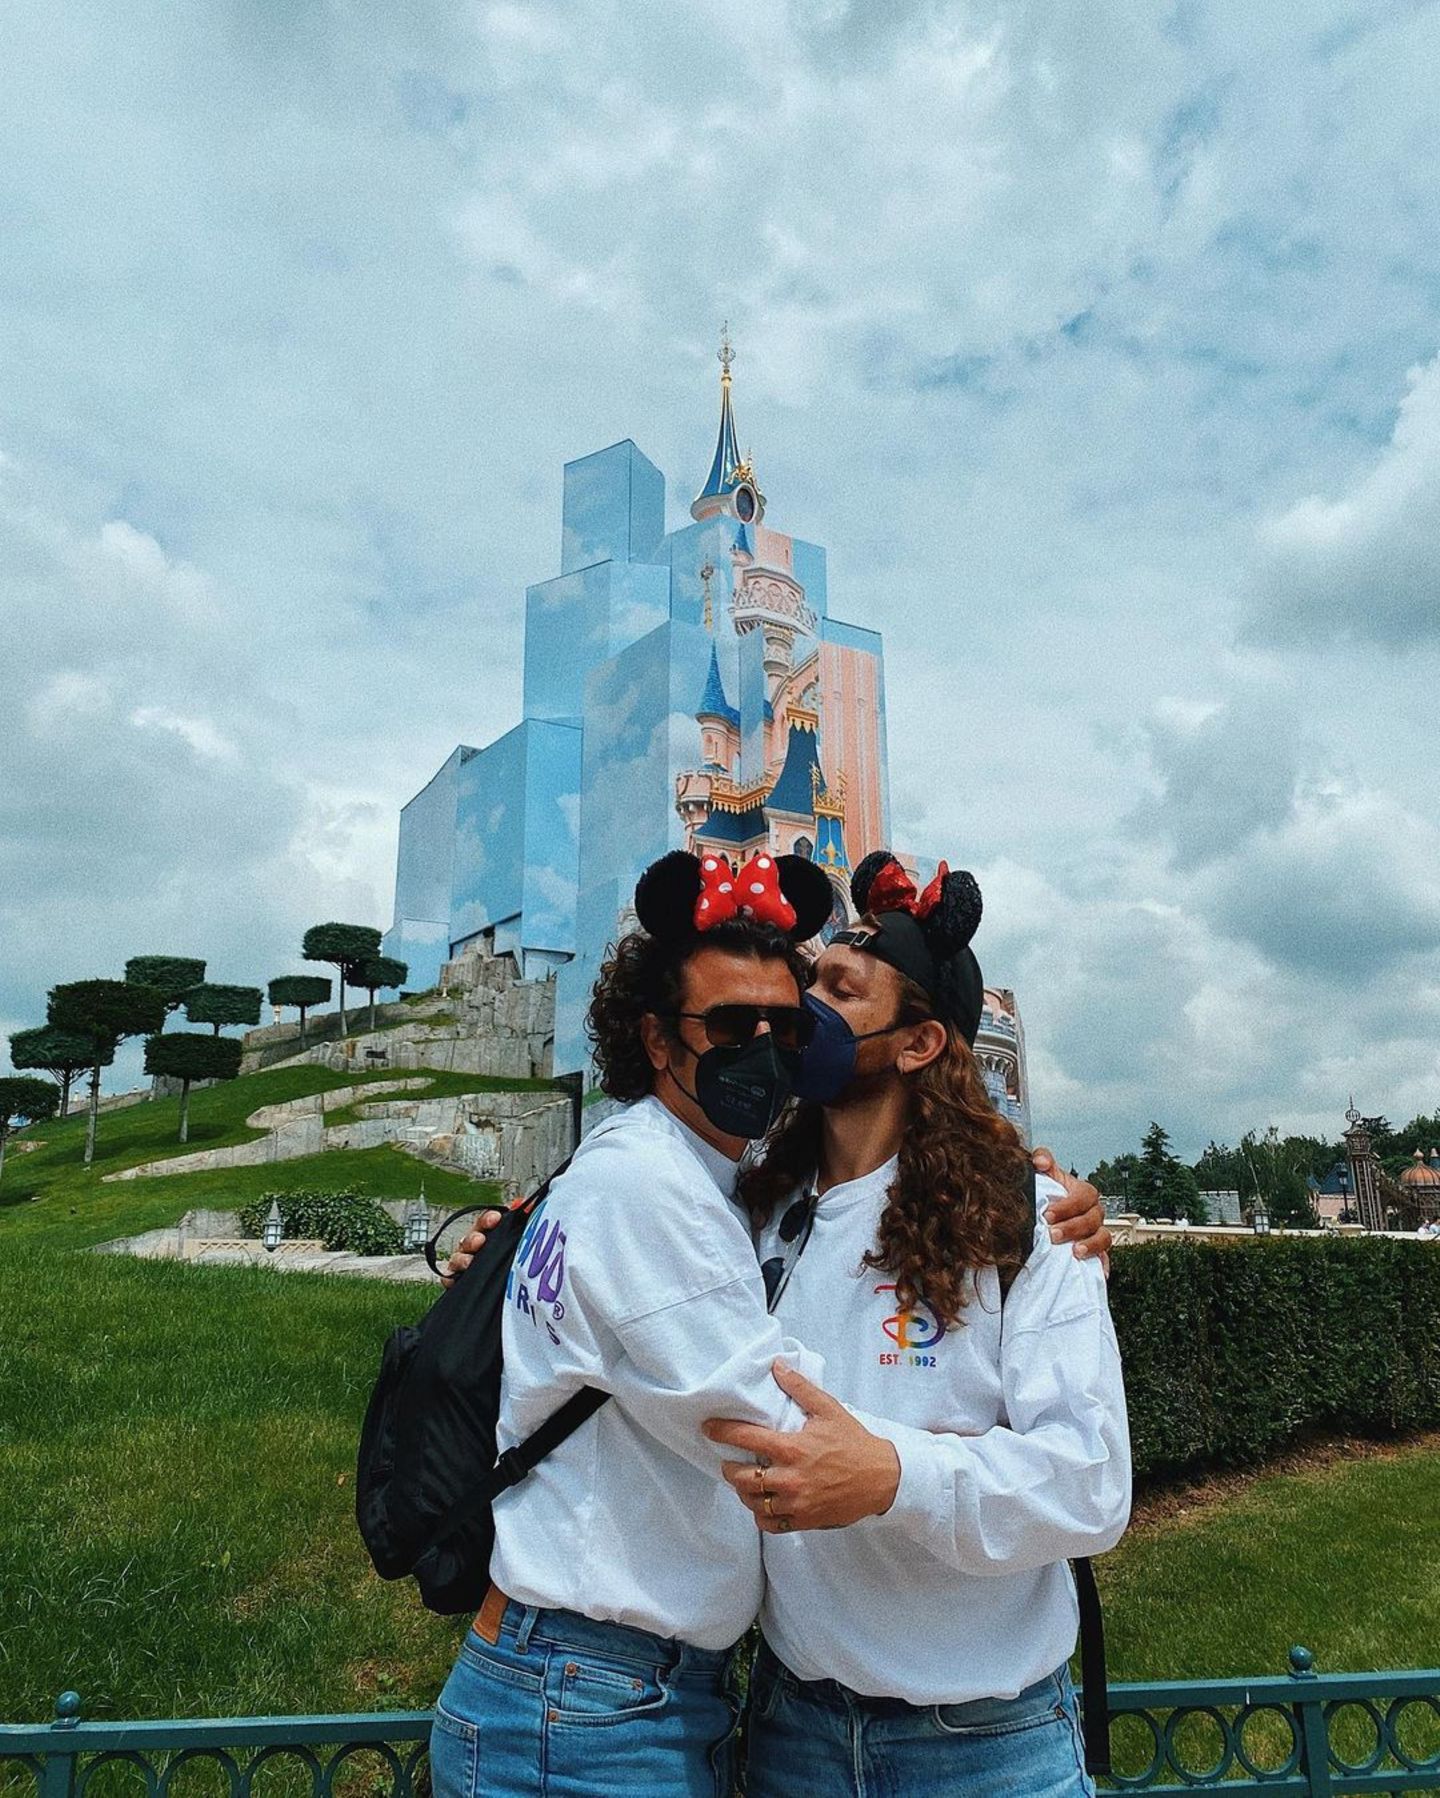 Für Riccardo Simonetti und seinen Partner geht es für ein paar Tage ins wunderbare Disneyland Paris. Bevor die beiden Mickey Mouse und Co. einen Besuch abstatten, bleibt noch Zeit für ein romantisches Selfie vor dem berühmten Disney Schloss. 